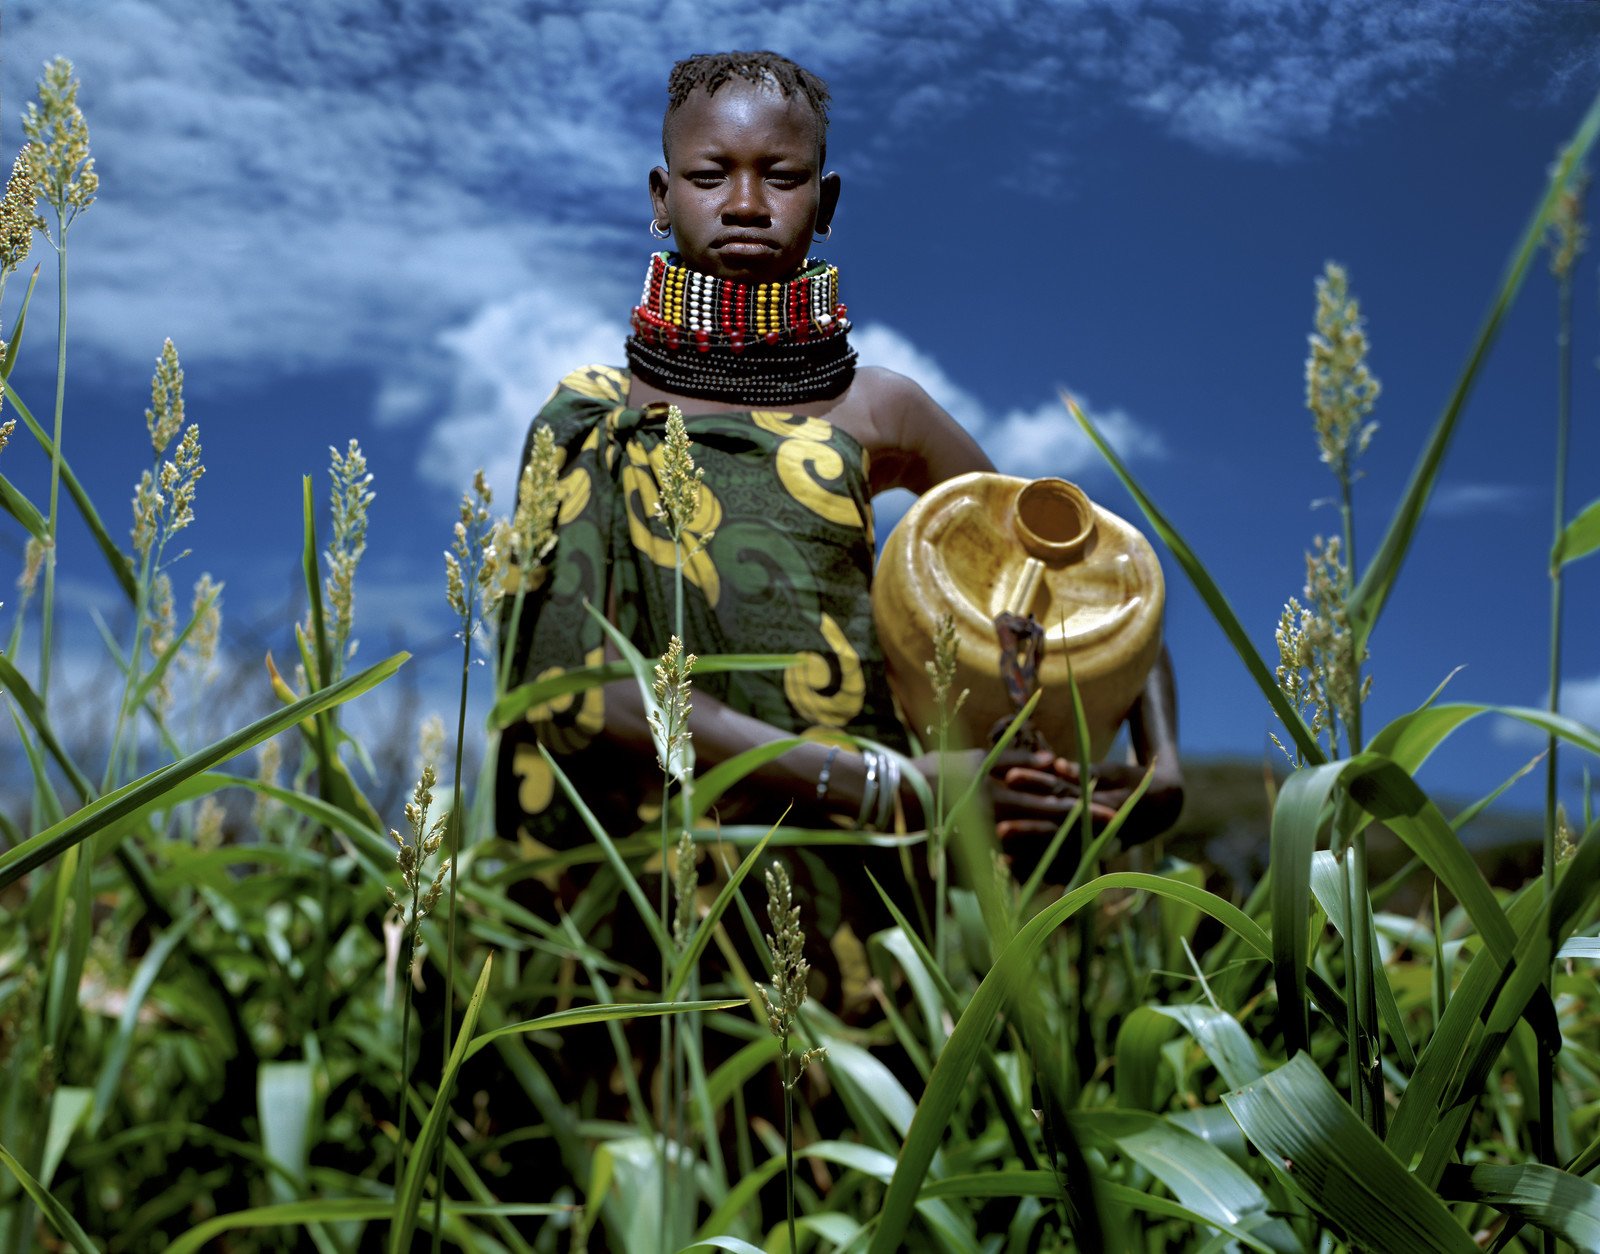 参展作品之一：菜田一片翠绿，收成在望，20岁的Tioko Korima对未来踌躇满志。摄于肯尼亚西北部地区。 (摄影︰Alejandro Chaskielberg/乐施会)